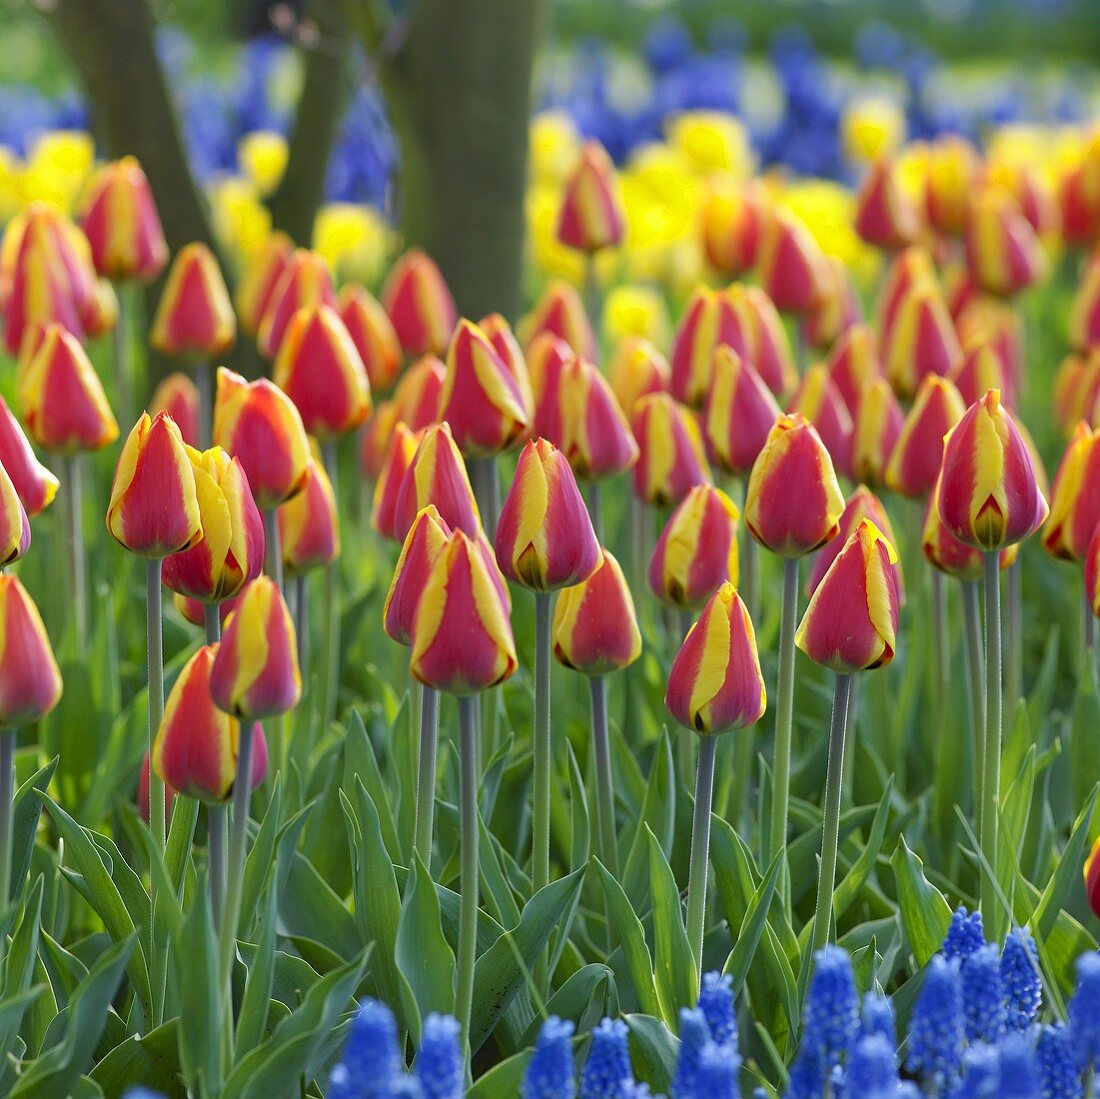 Tulips, variety: Bright Flair, in garden